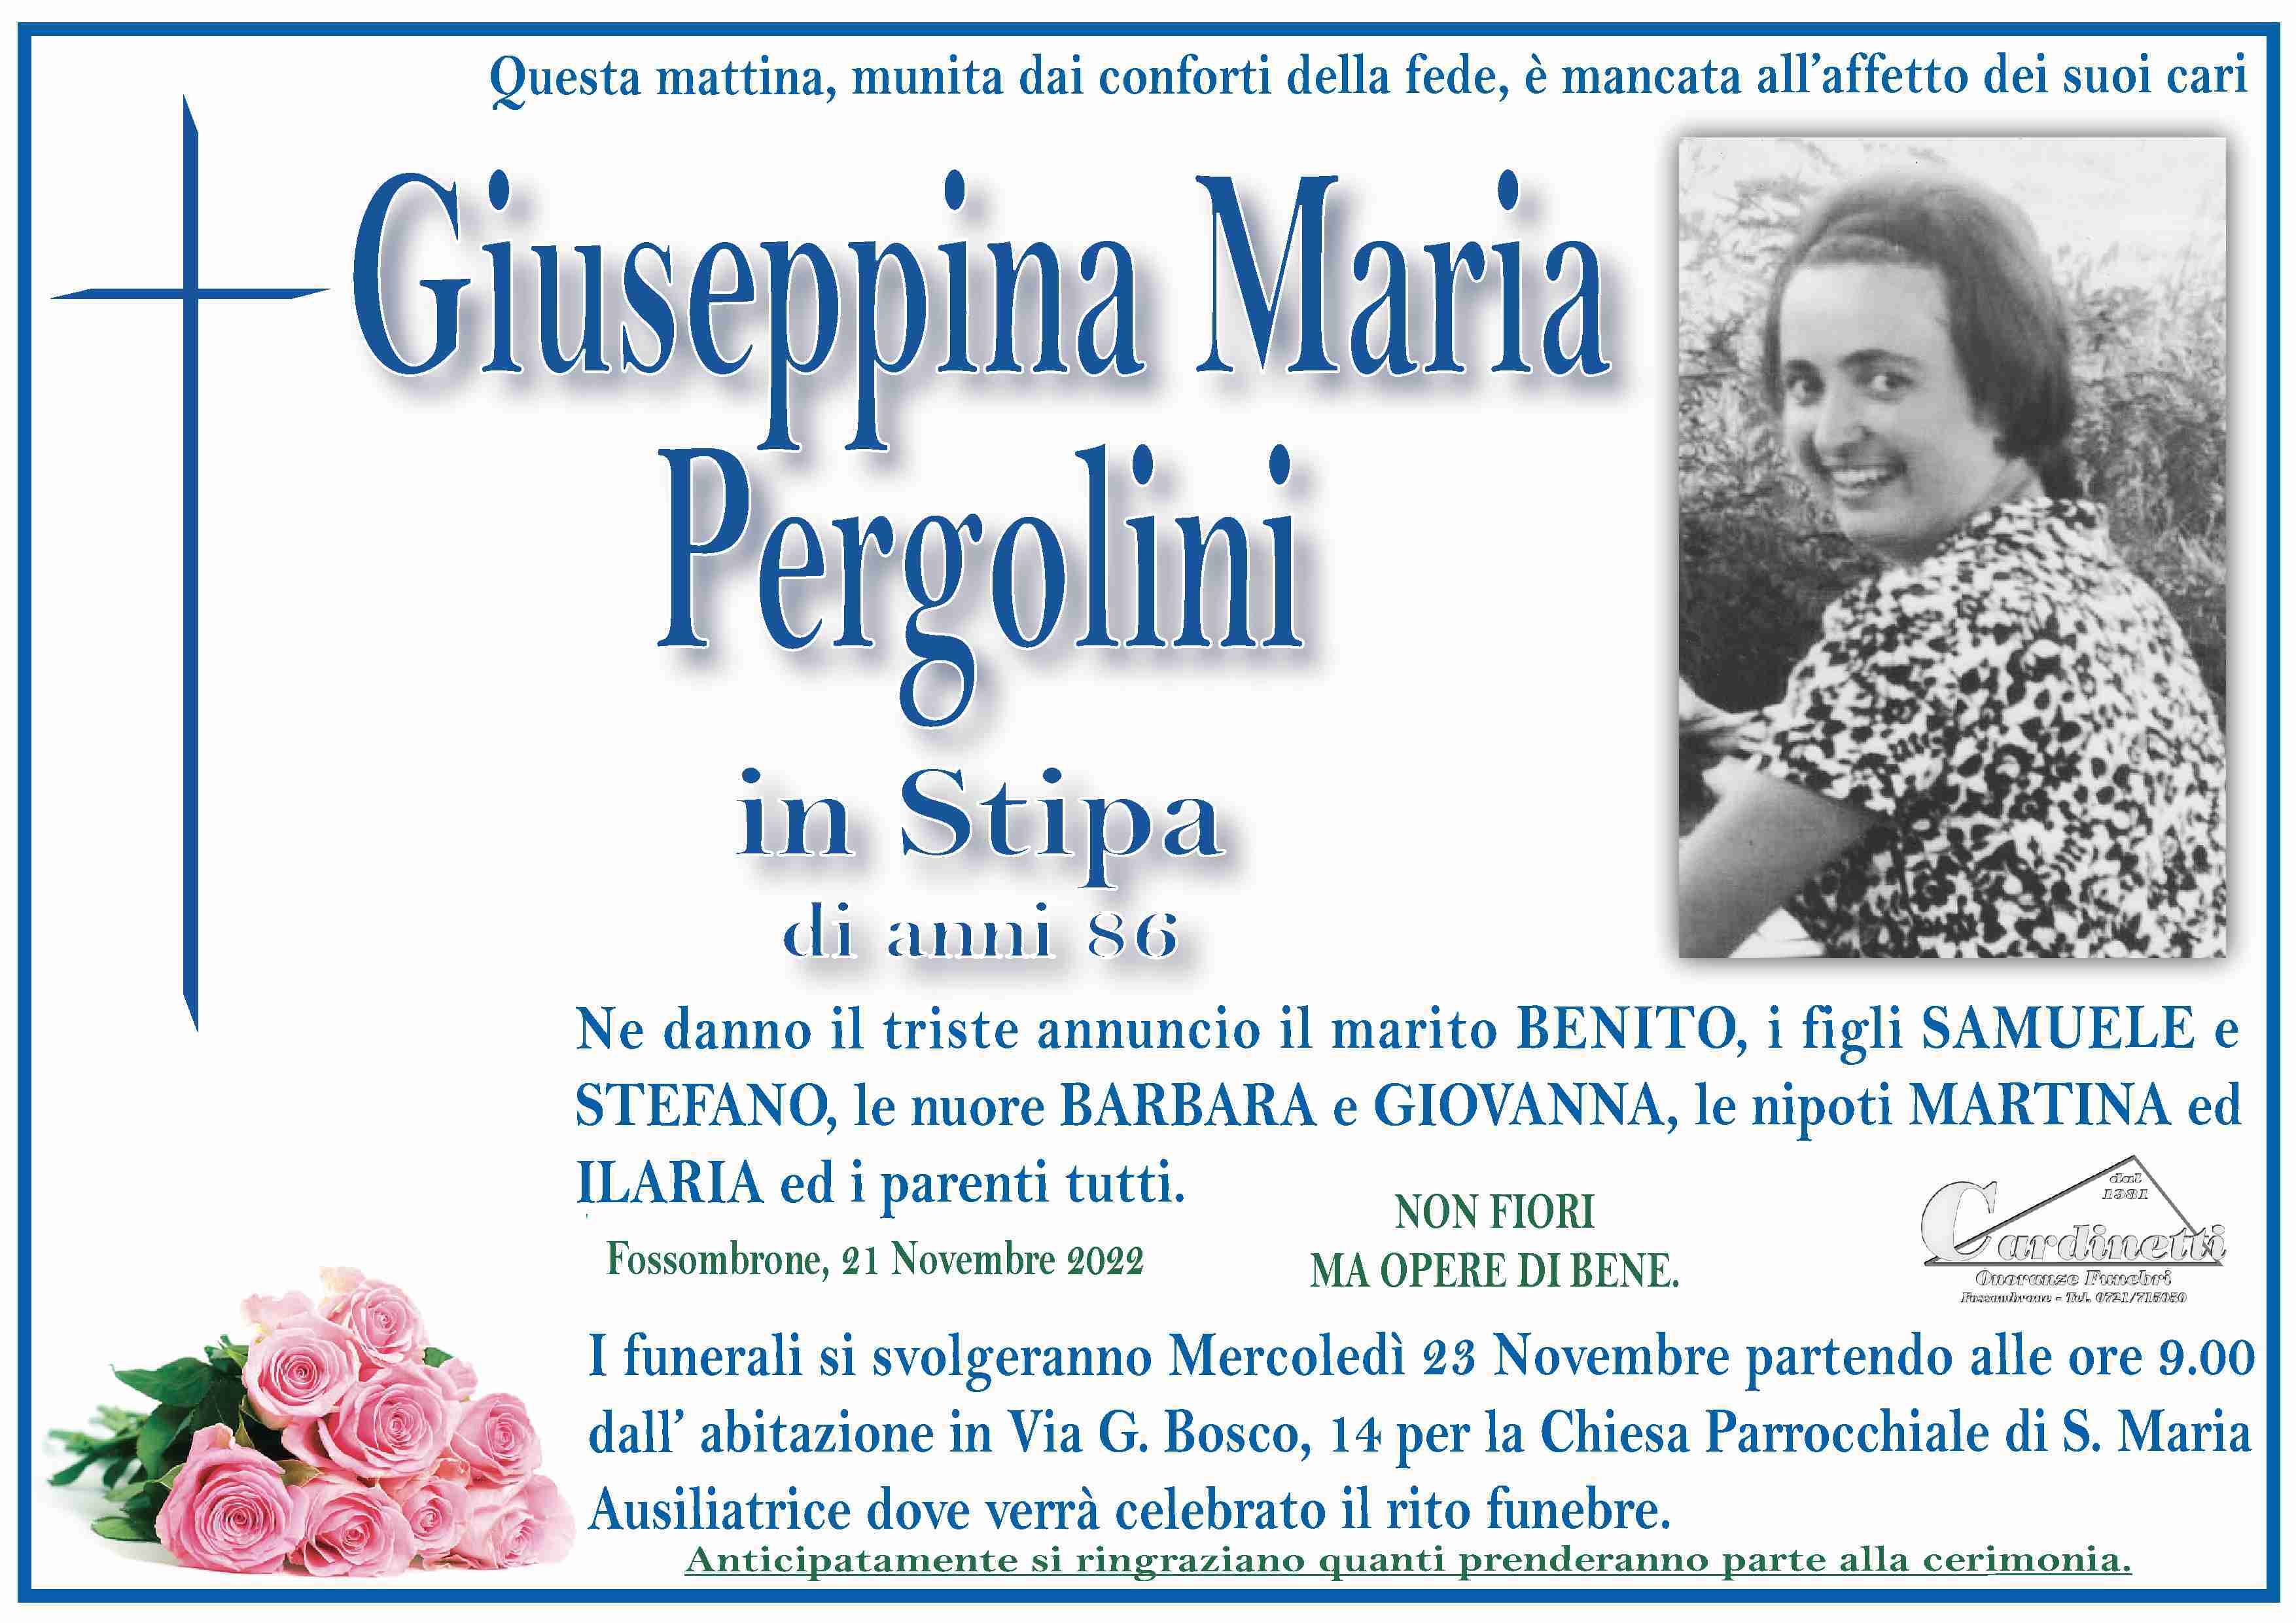 Giuseppina Maria Pergolini